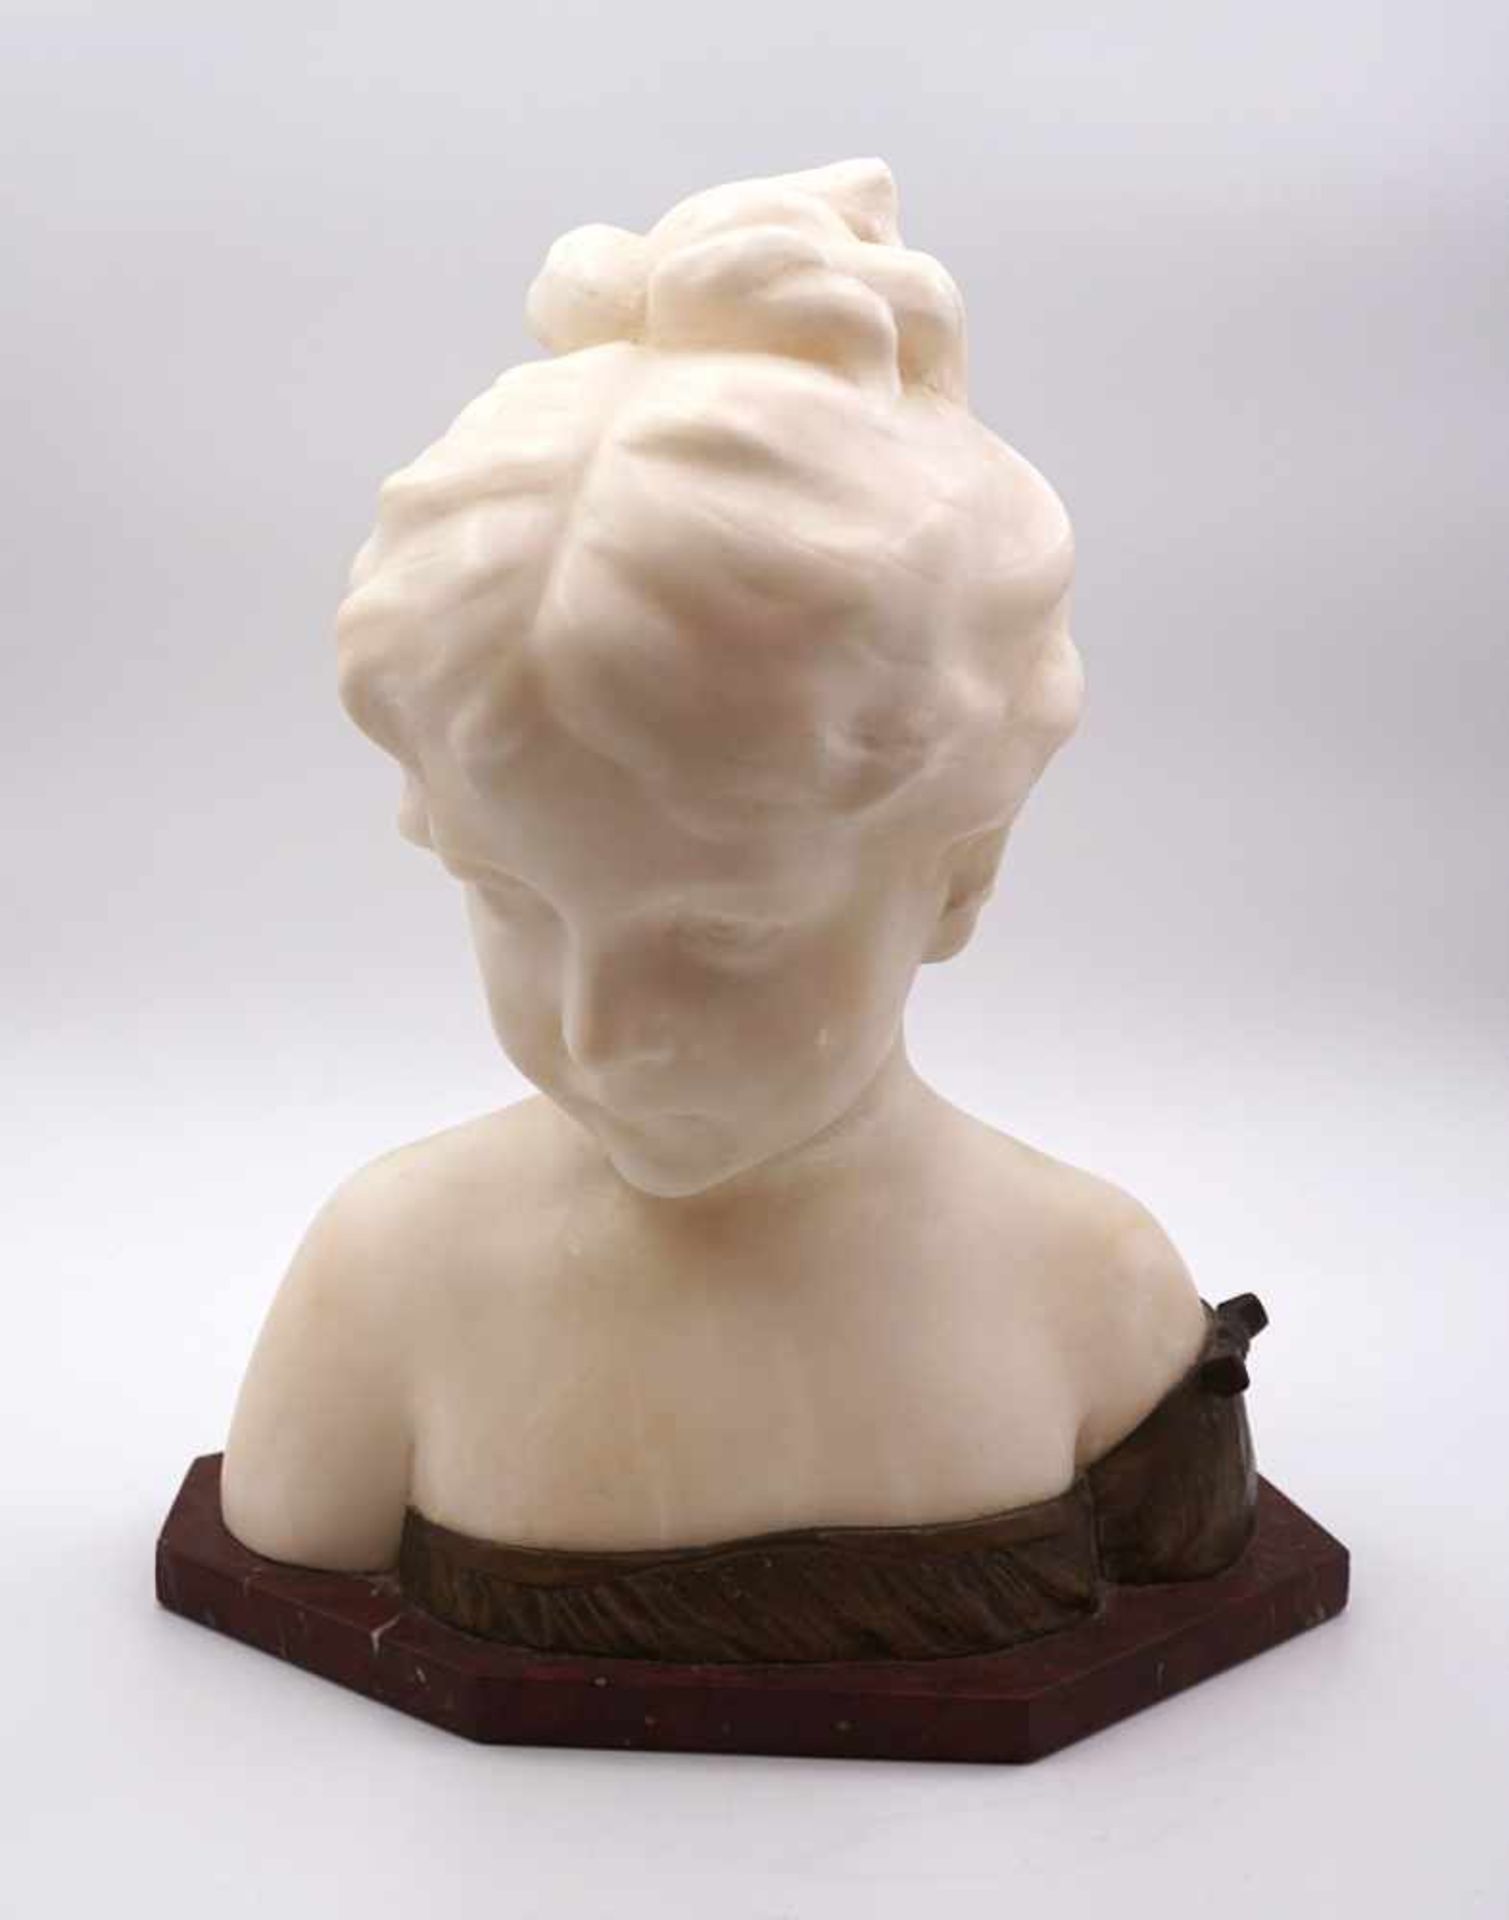 1 Skulptur wohl Alabaster "Mädchenbüste" wohl um 1900, signiert GINO